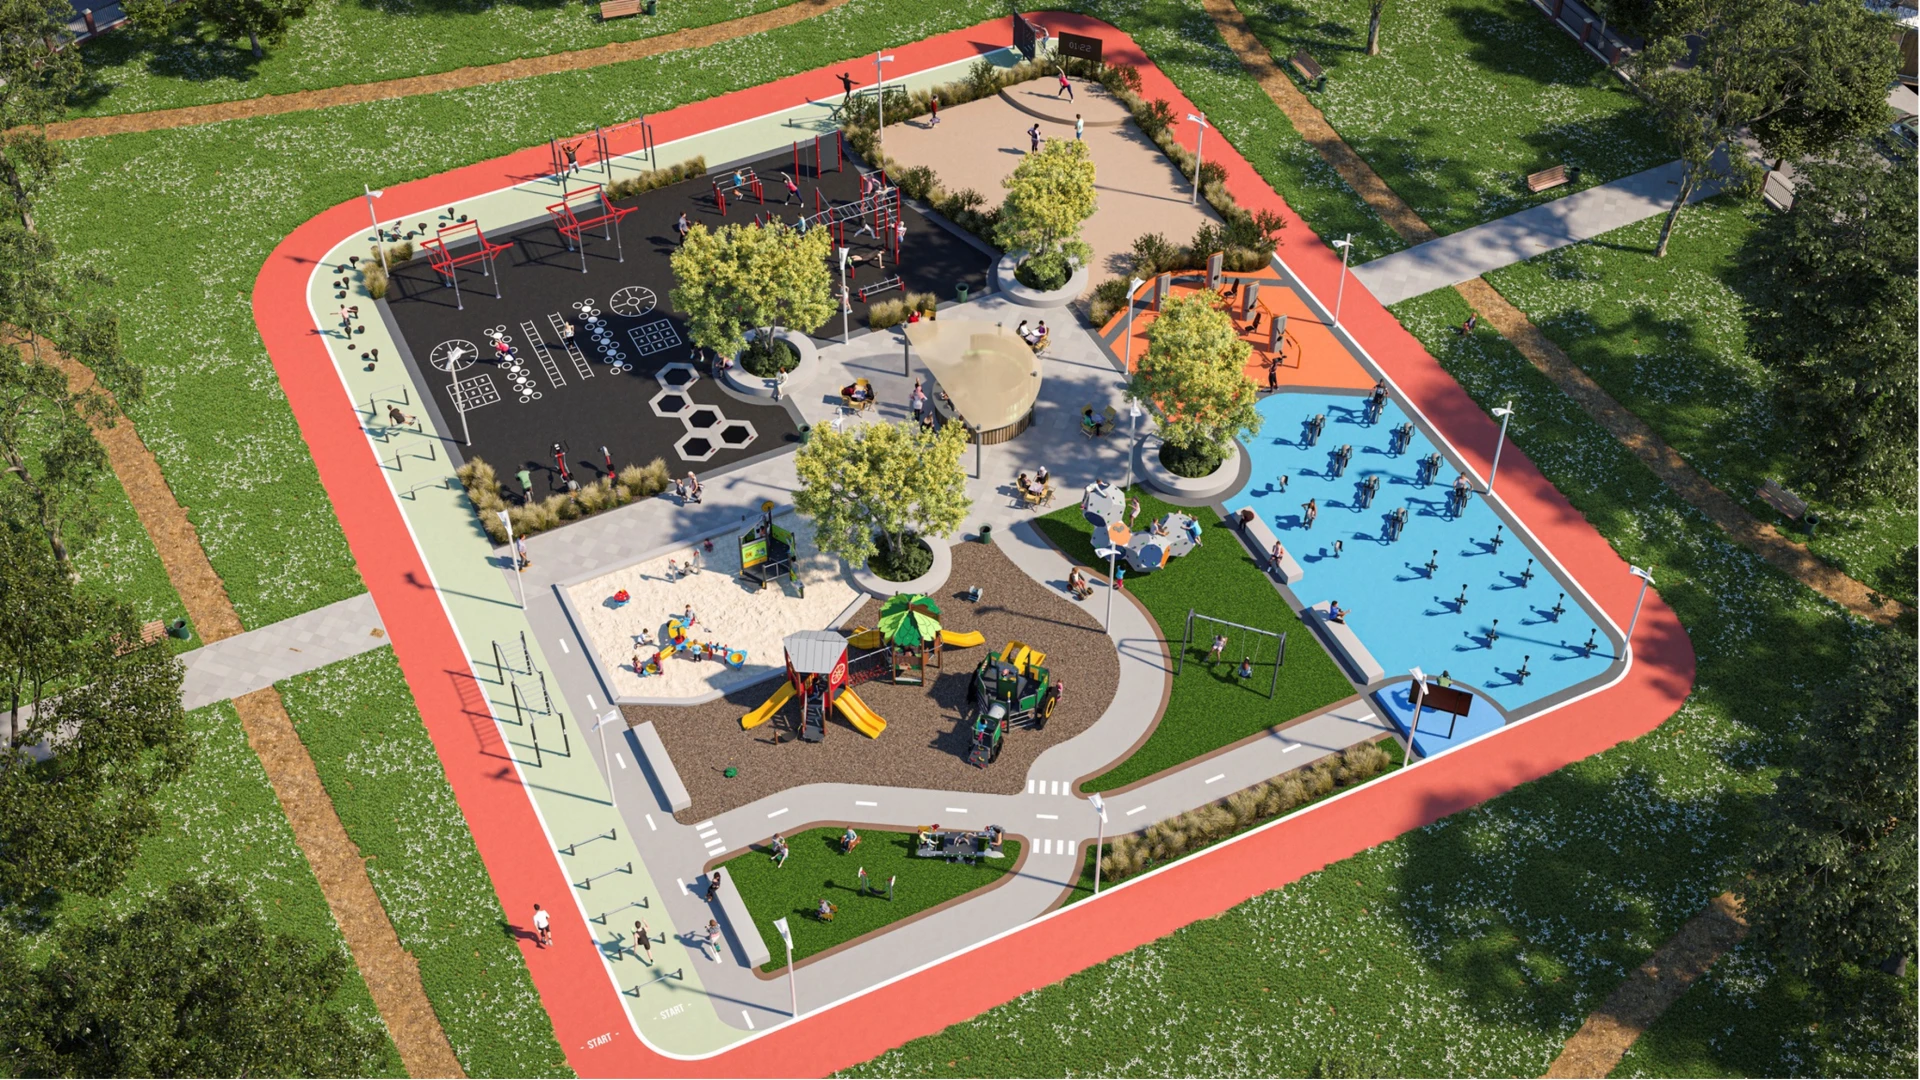 Vue aérienne d'une aire de jeux et d'un gymnase en plein air dans un parc